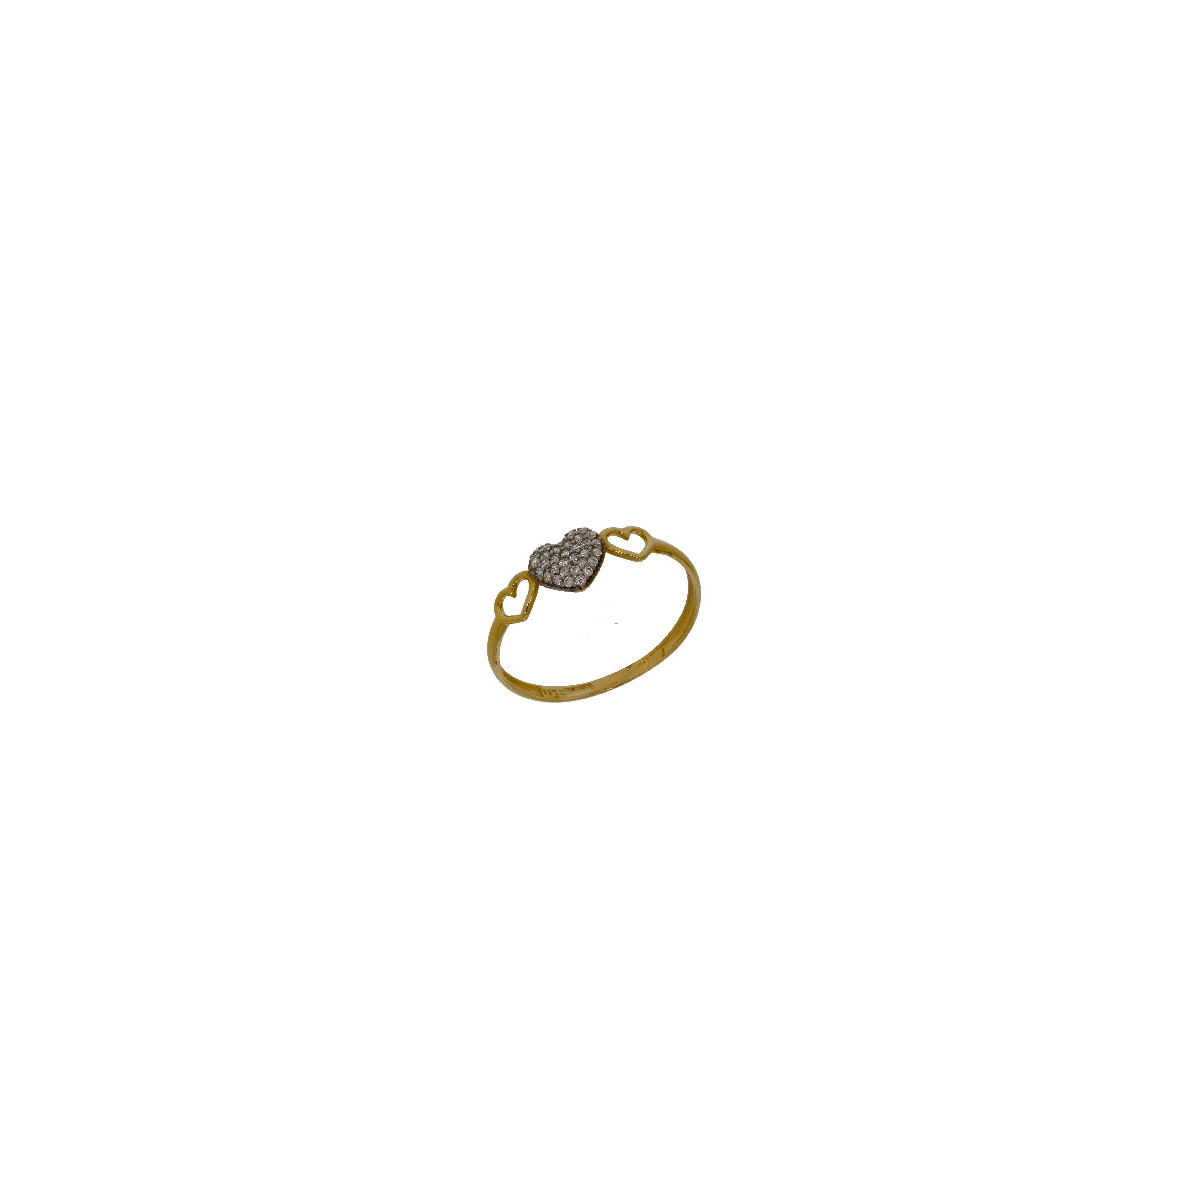 Anillo con Corazon de Oro Circon - AN2349 0,80 +30$